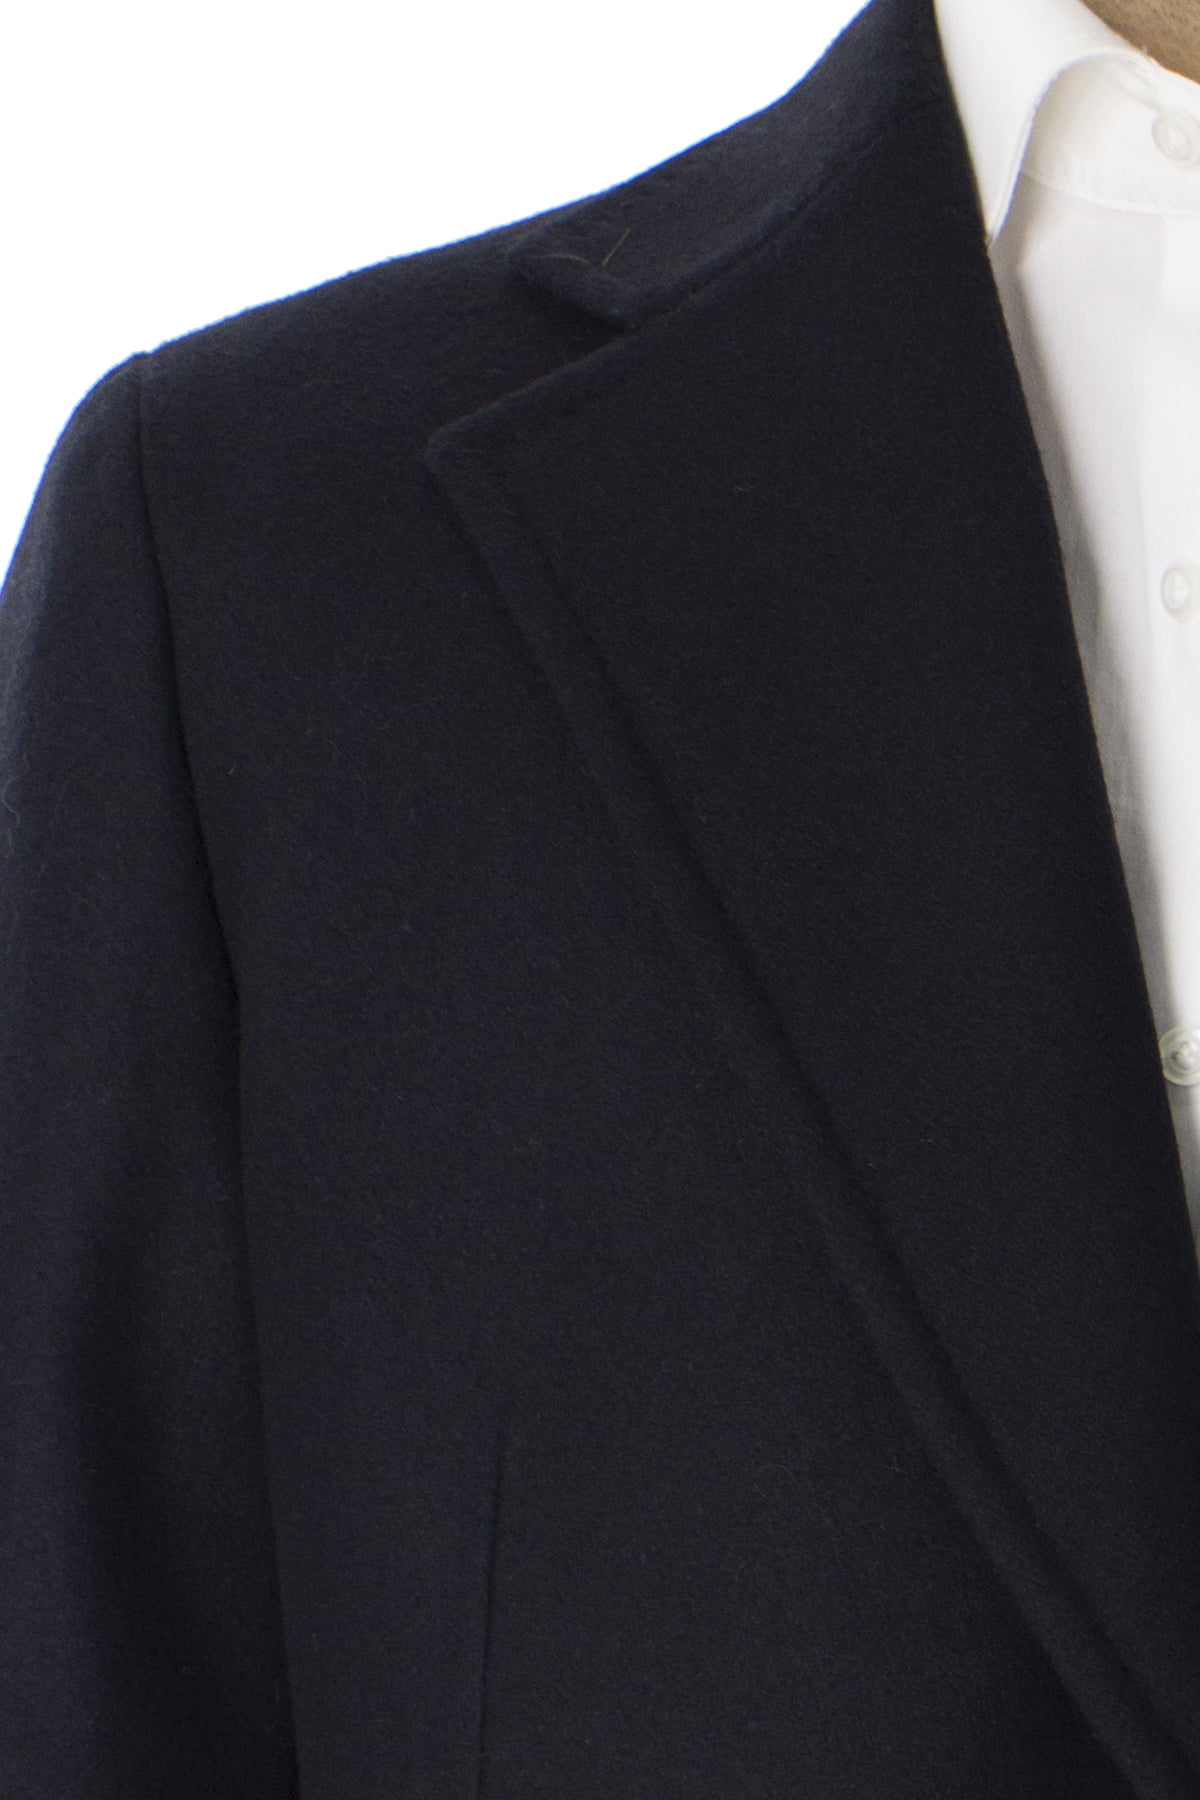 Cappotto uomo nero monopetto in lana rever largo made in italy